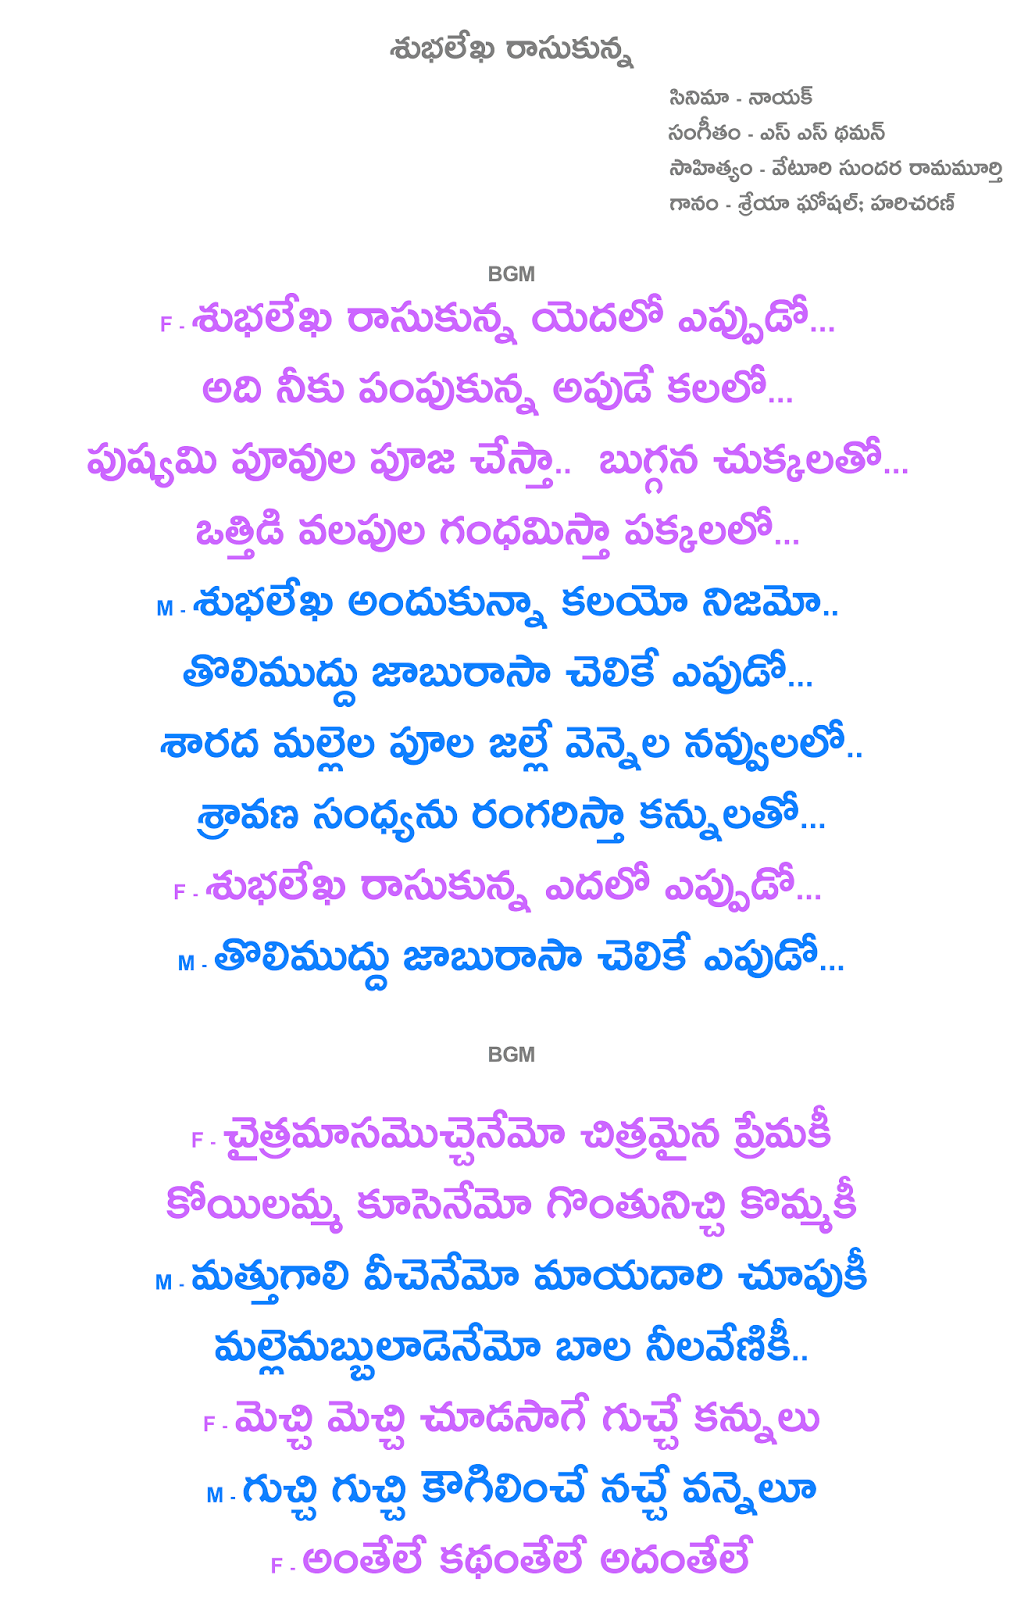 Subhalekha Rasukunna Lyrics